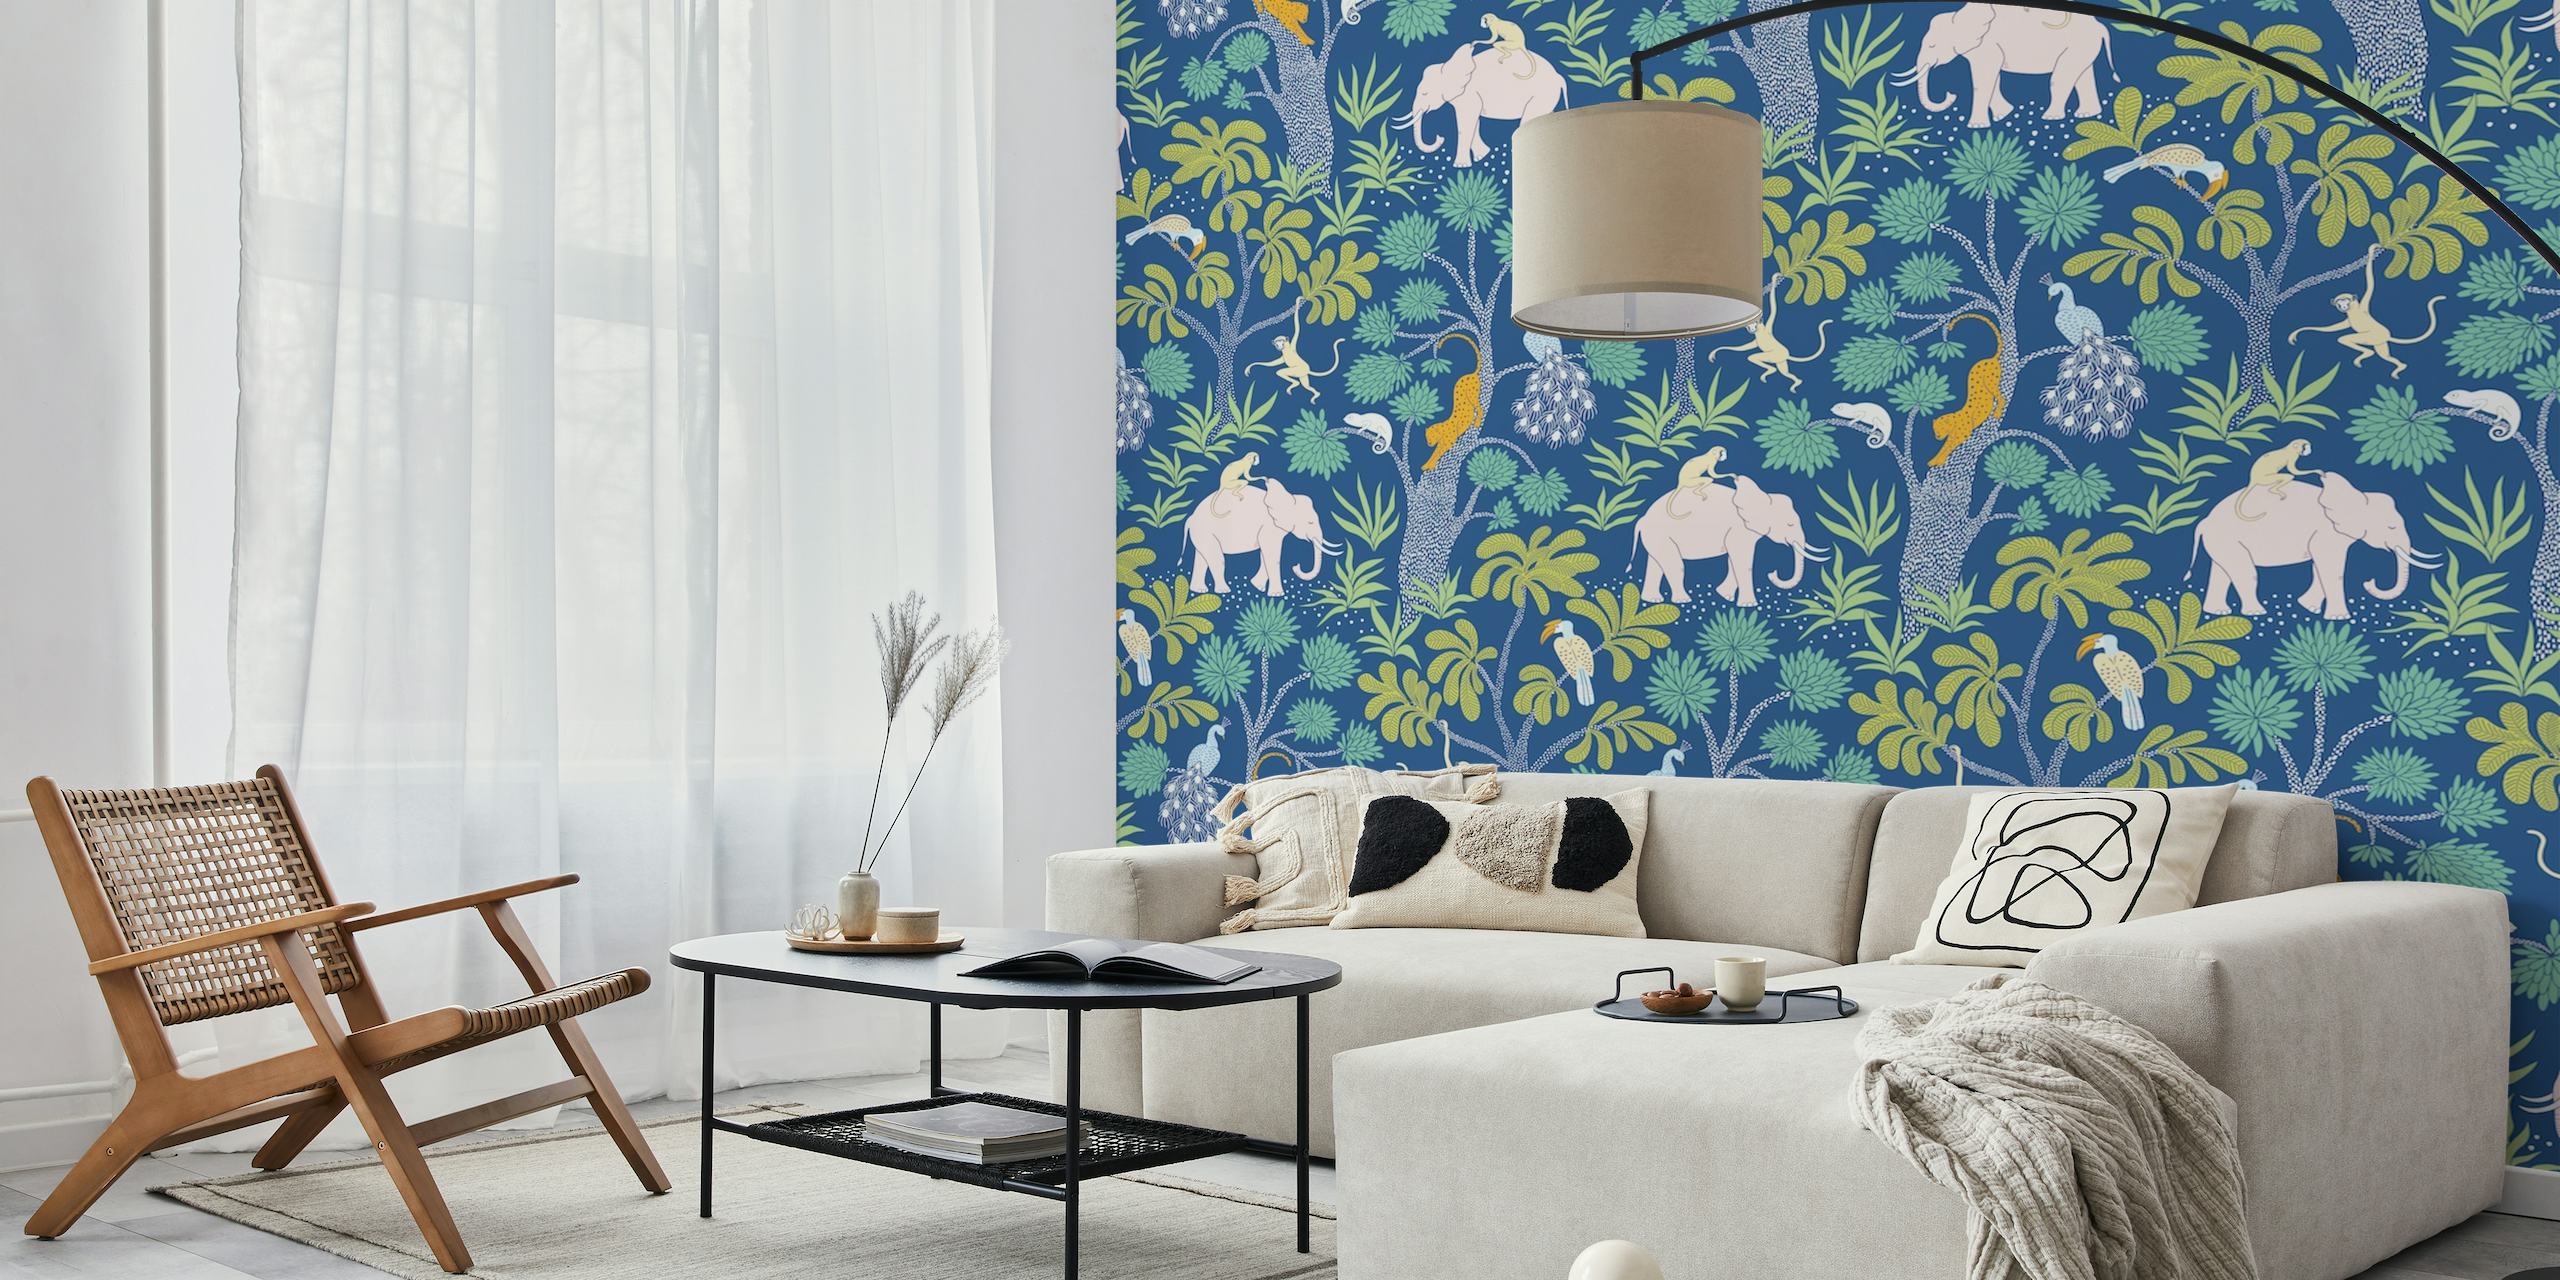 Kleurrijke muurschildering met olifantenjunglepatroon van Happywall